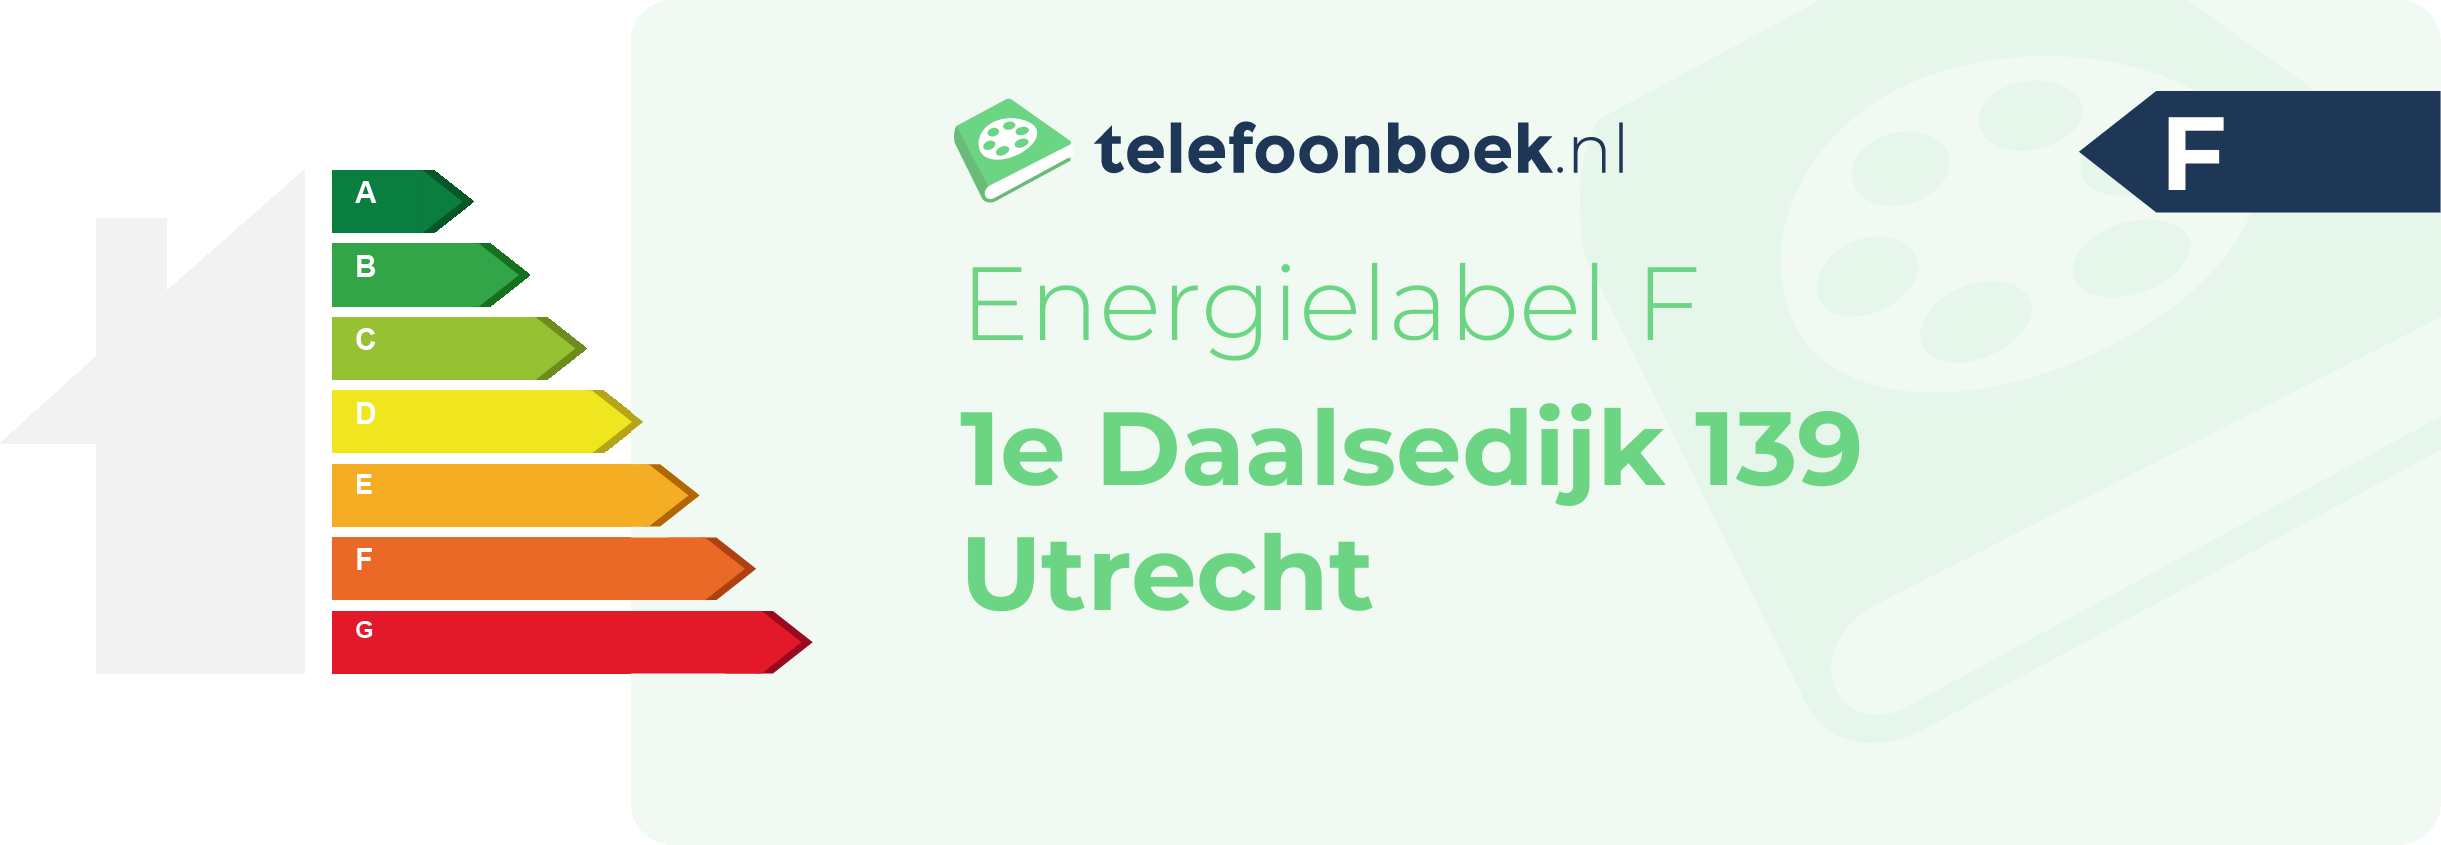 Energielabel 1e Daalsedijk 139 Utrecht